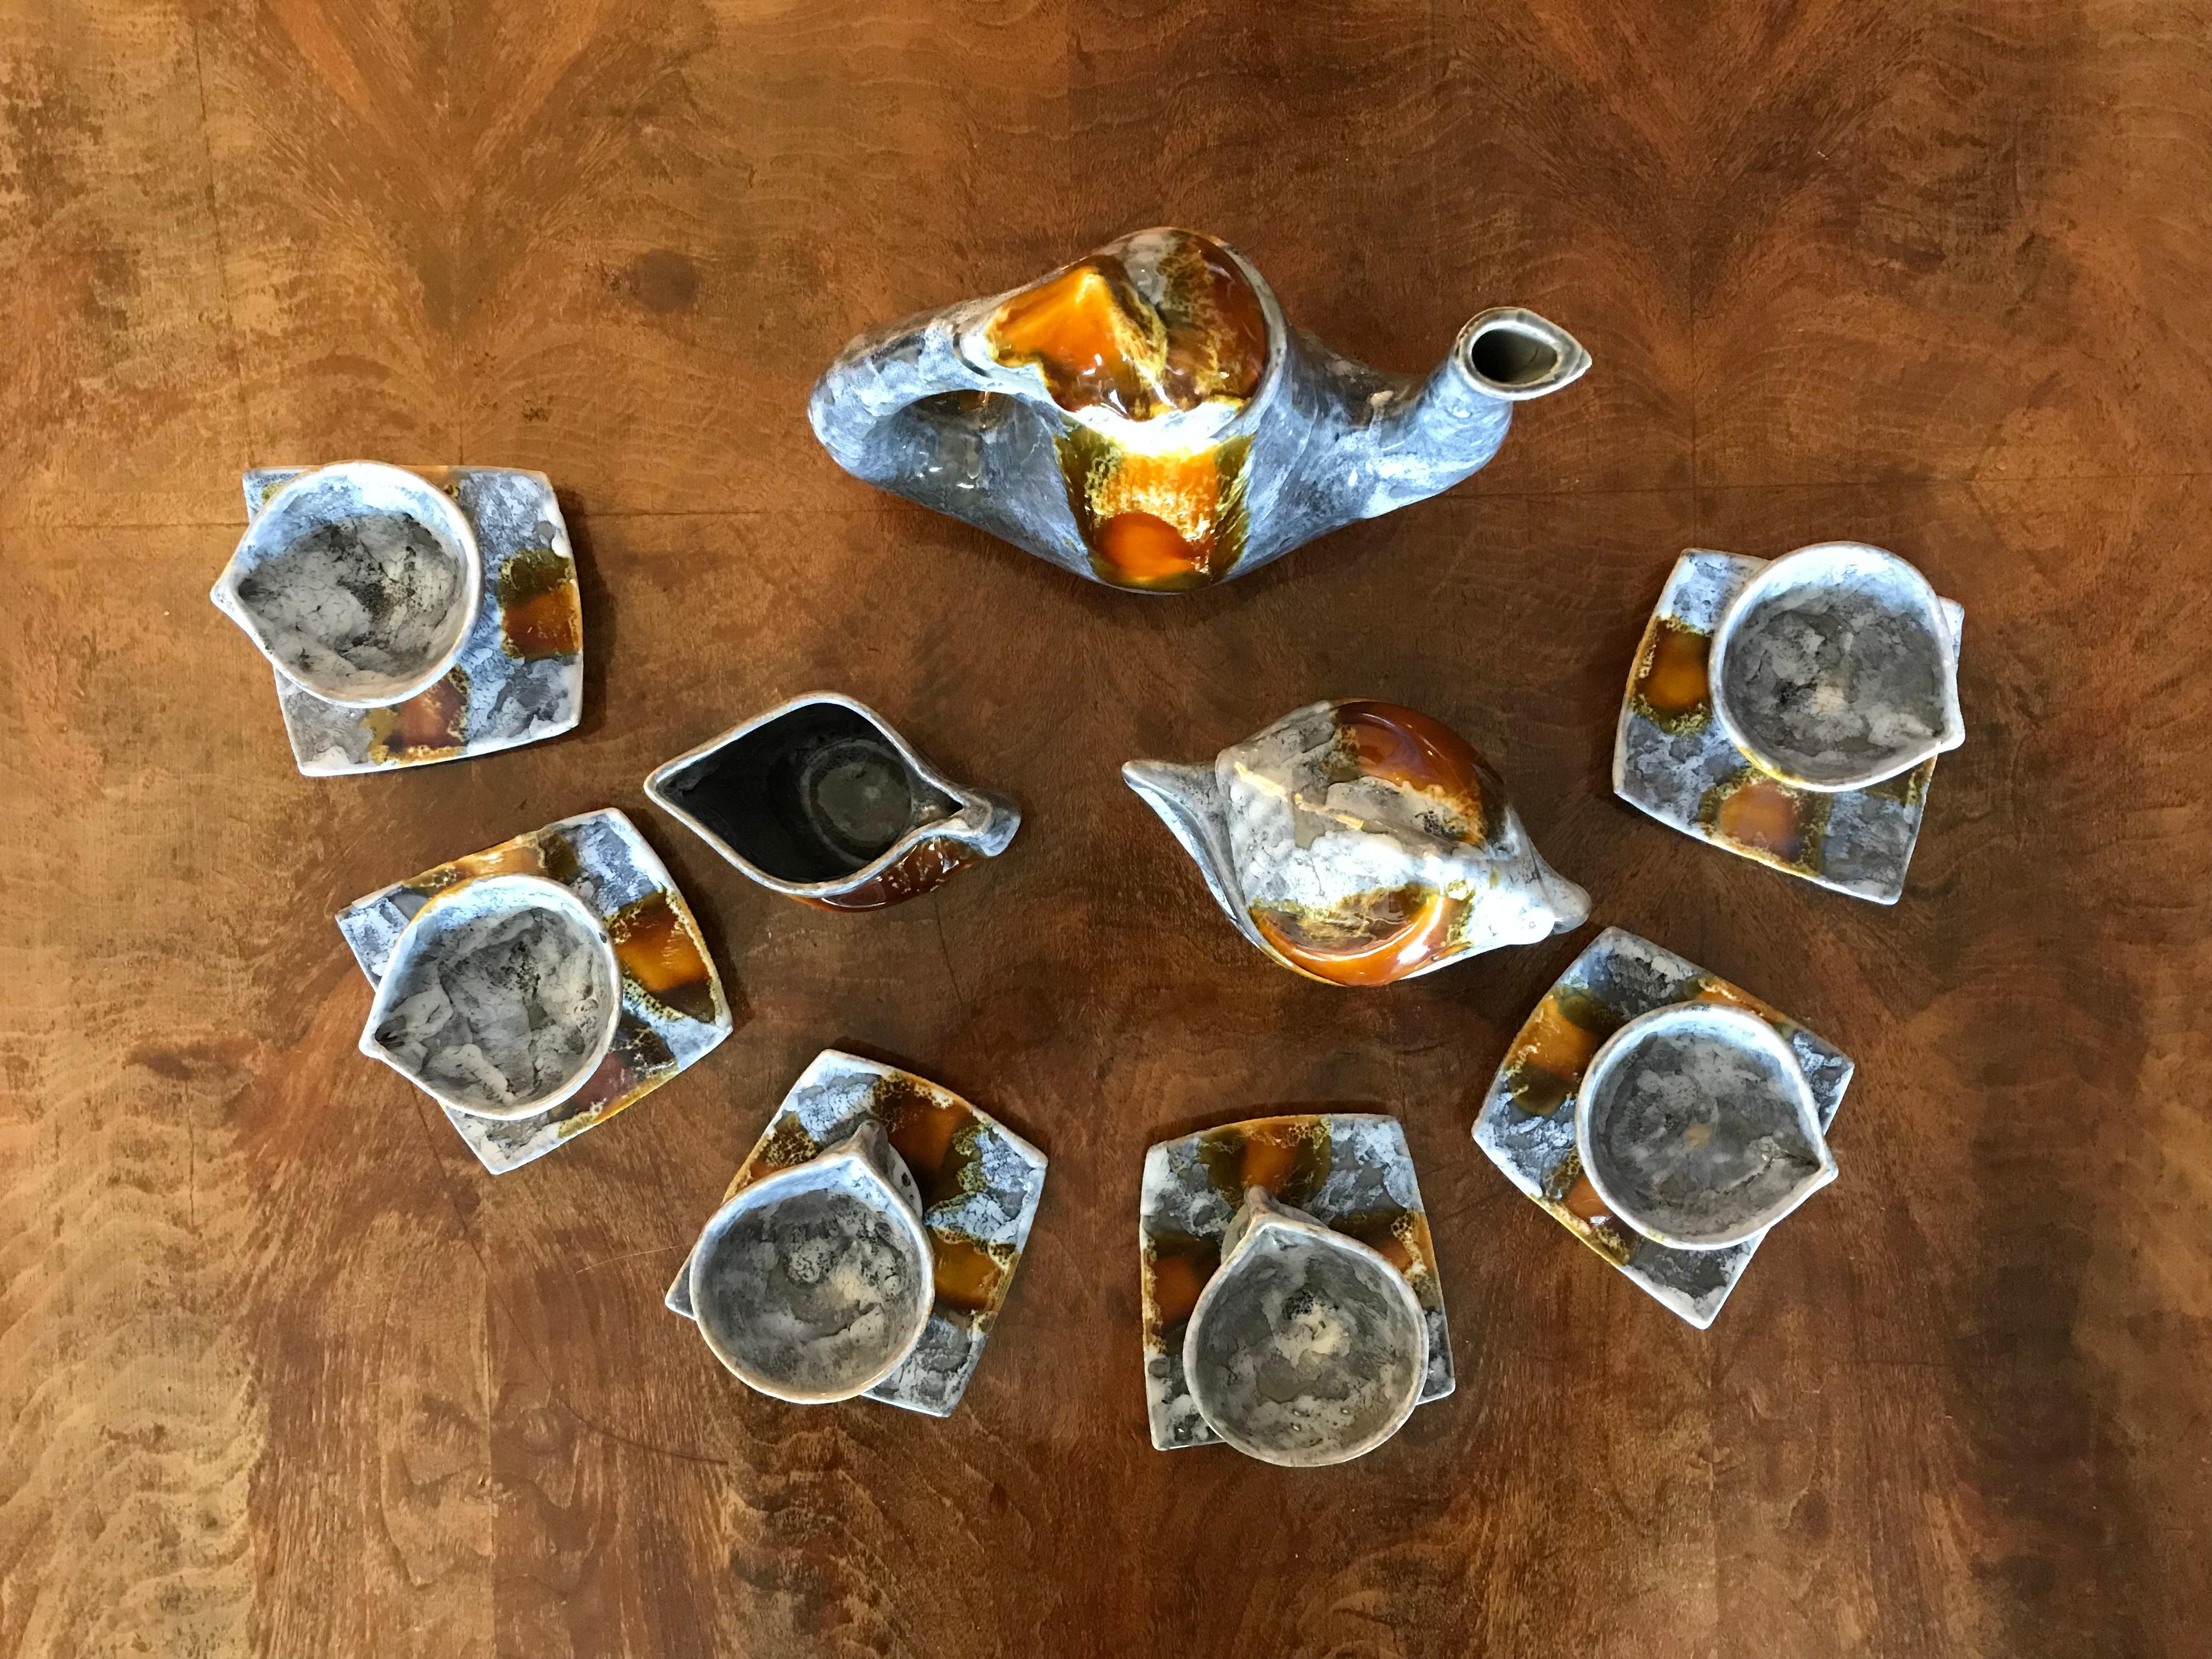 Tasses originales signées Vallauris French Mid-Century Modern design creative design full Coffee set made in ceramics.
6 tasses diamètre 8-8,5cm H 7 cm
6 soucoupes L 11 cm x L 11,5 cm x P 2 cm
Pot H 26 cm x L 24 cm x L 9,5 cm et son